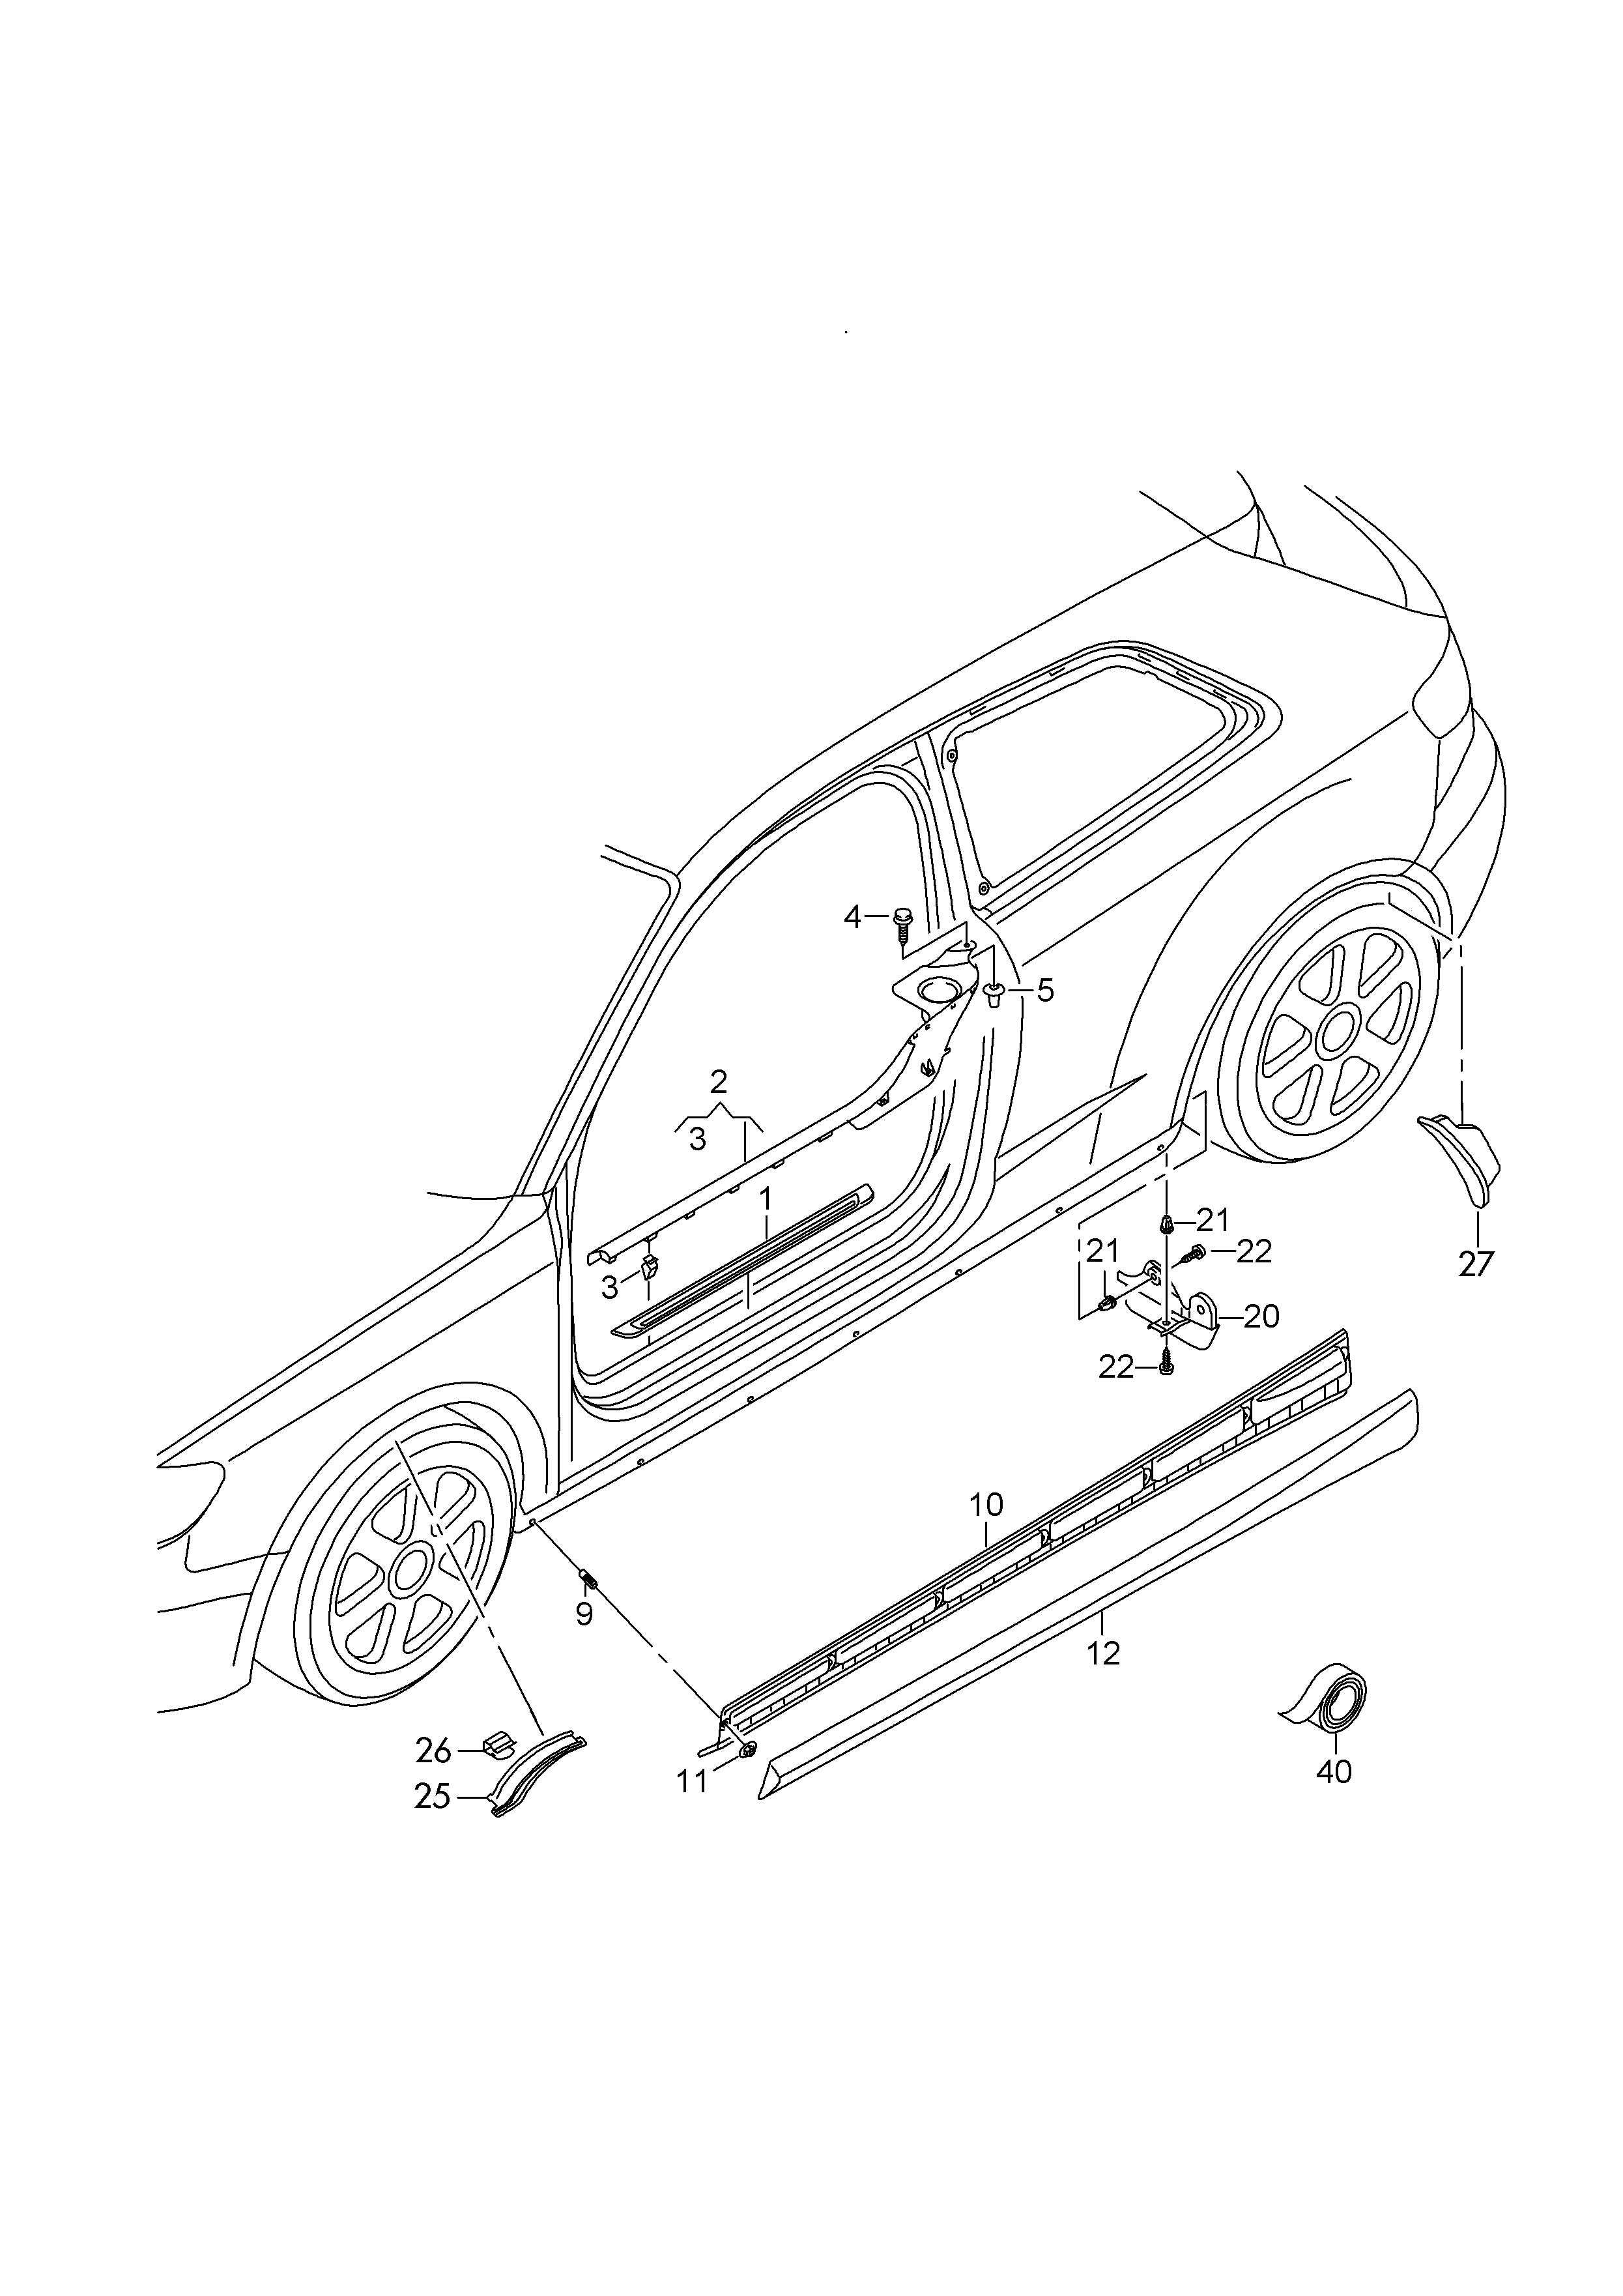 门槛饰条; 固定板; 下边梁饰板; 车轮扰流板 - Audi A3/S3/Sportb/qu.(A3)  